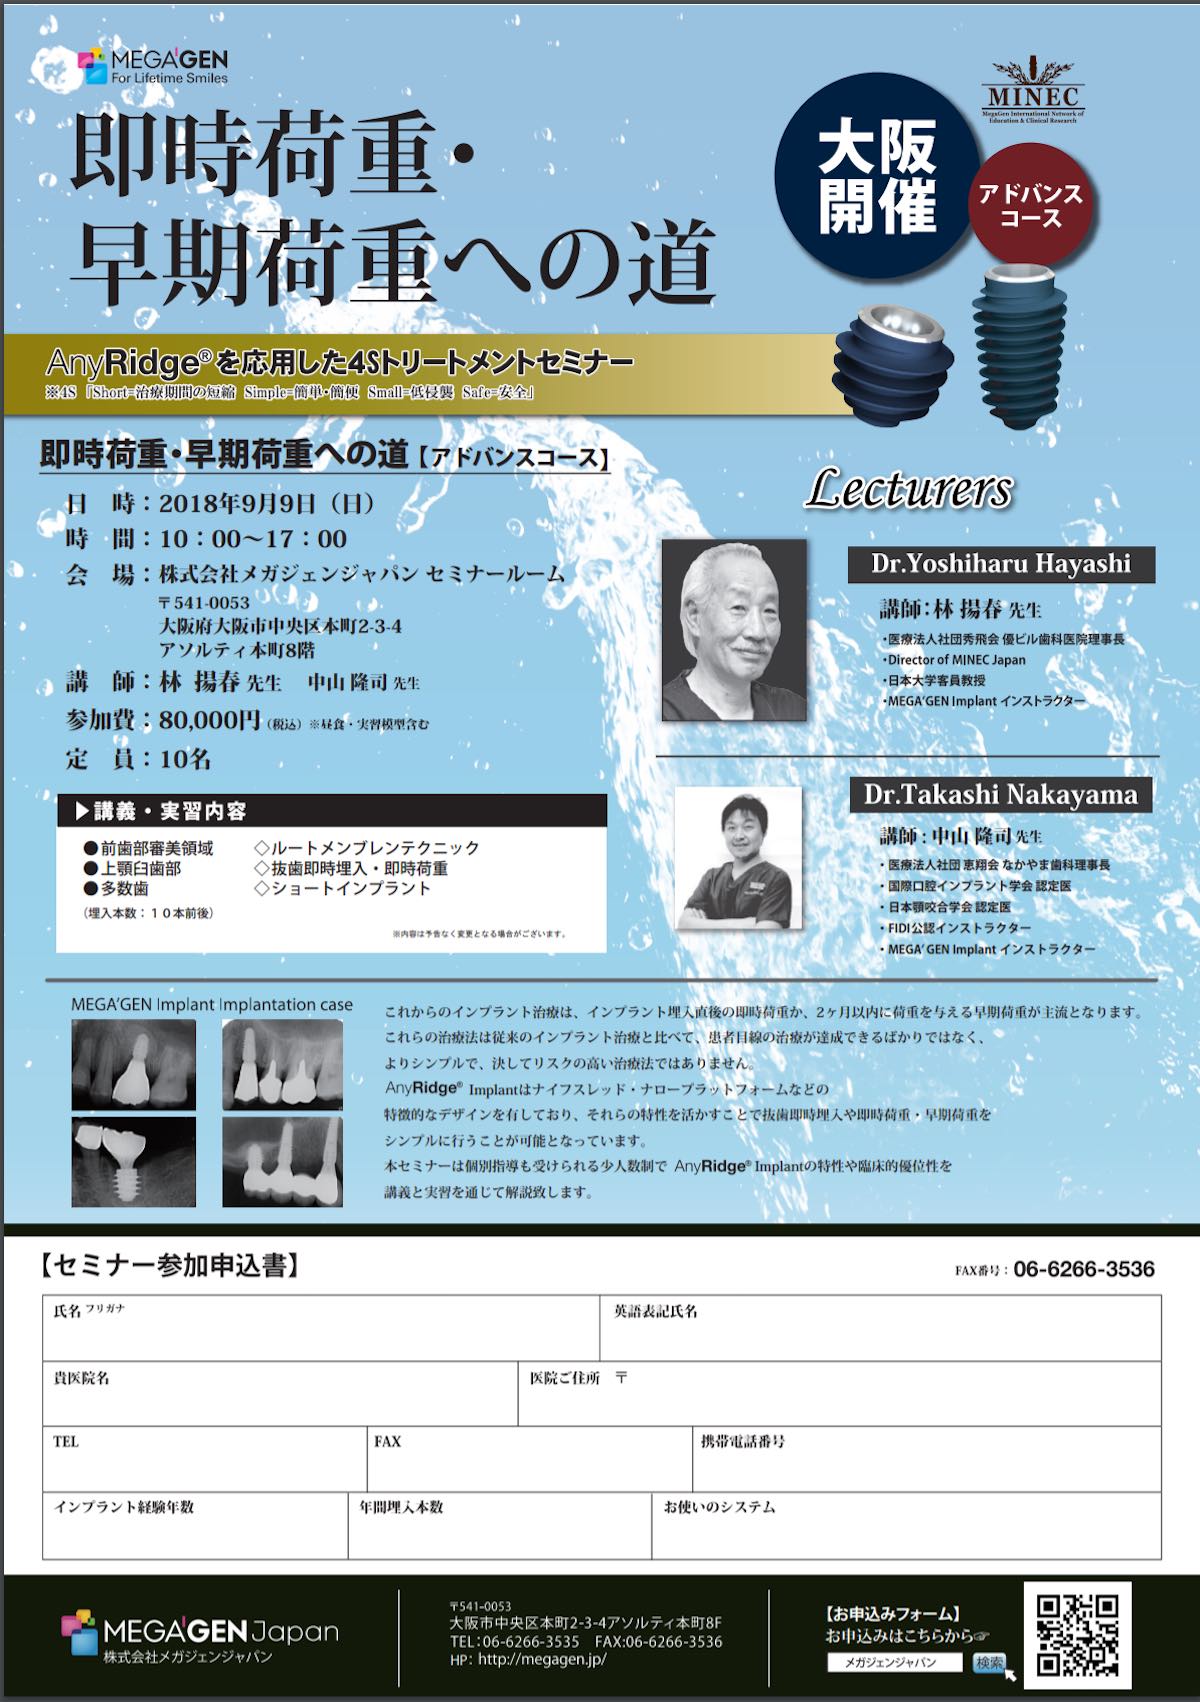 【歯科医師向け情報】【2018/9/9 大阪】｢AnyRidgeを応用した4Sトリートメントセミナー｣アドバンスコースの講師を務めます